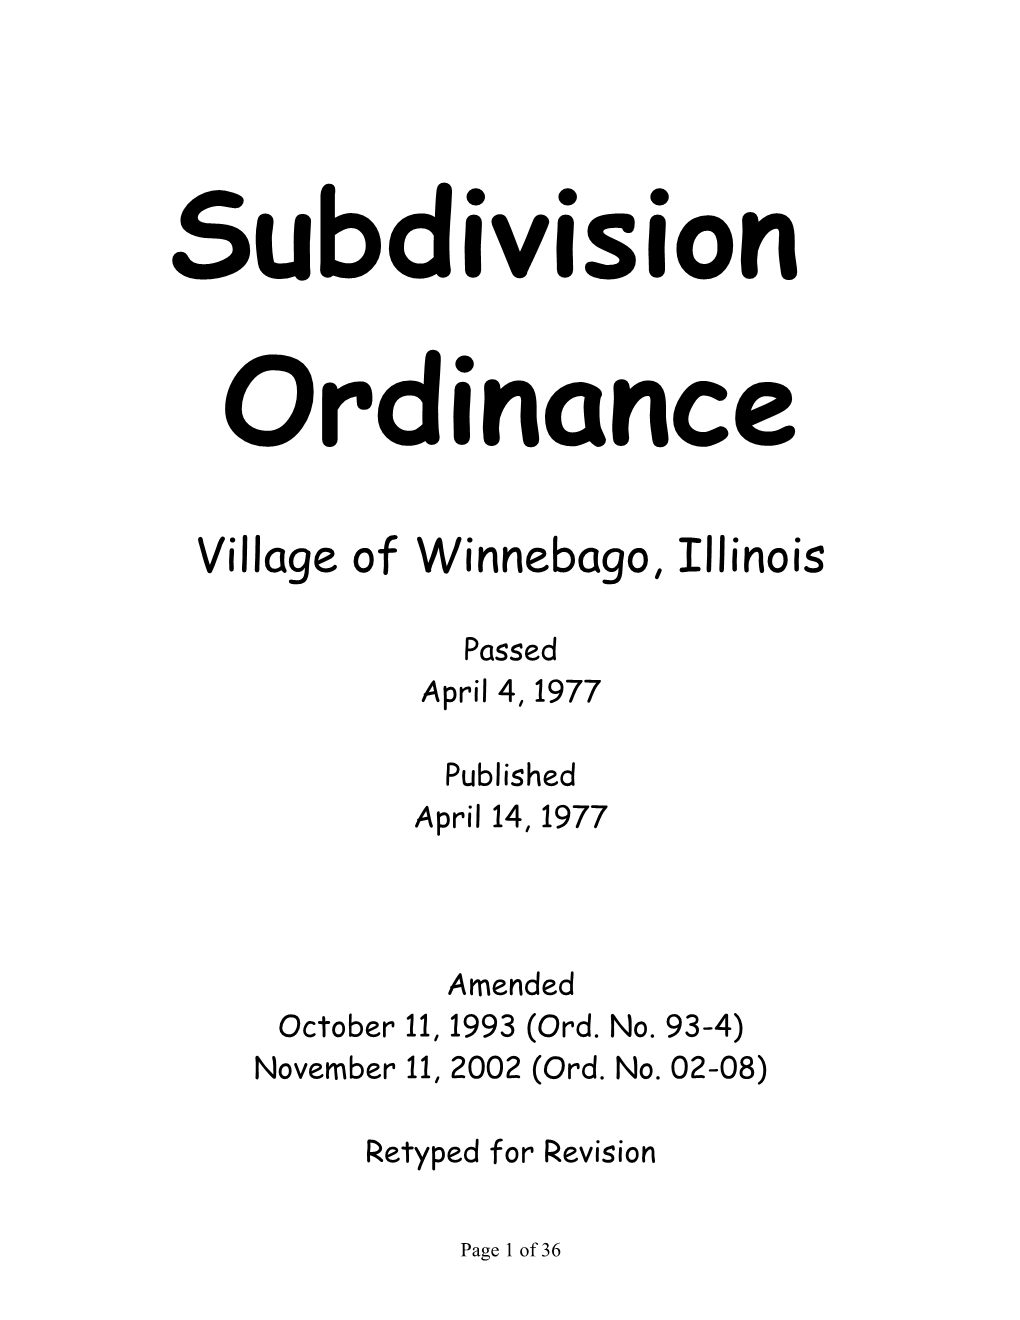 Village of Winnebago, Illinois